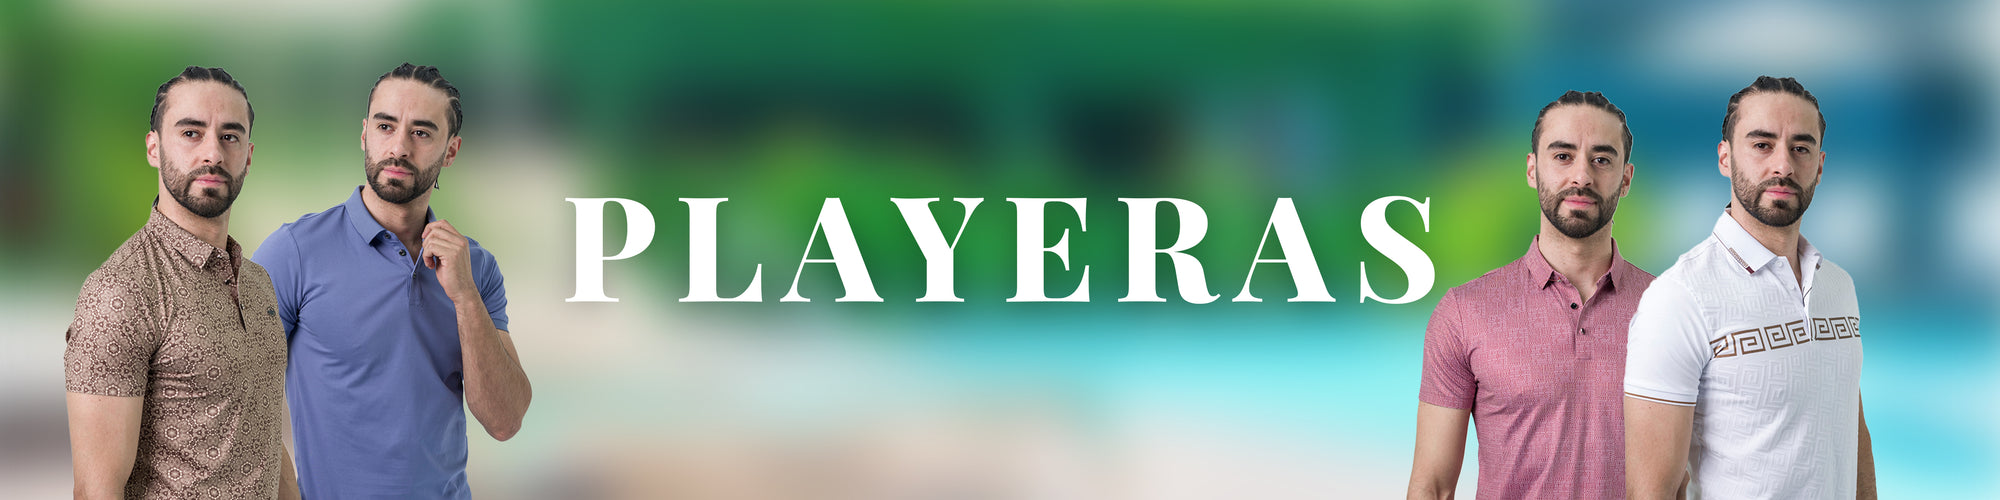 Playeras